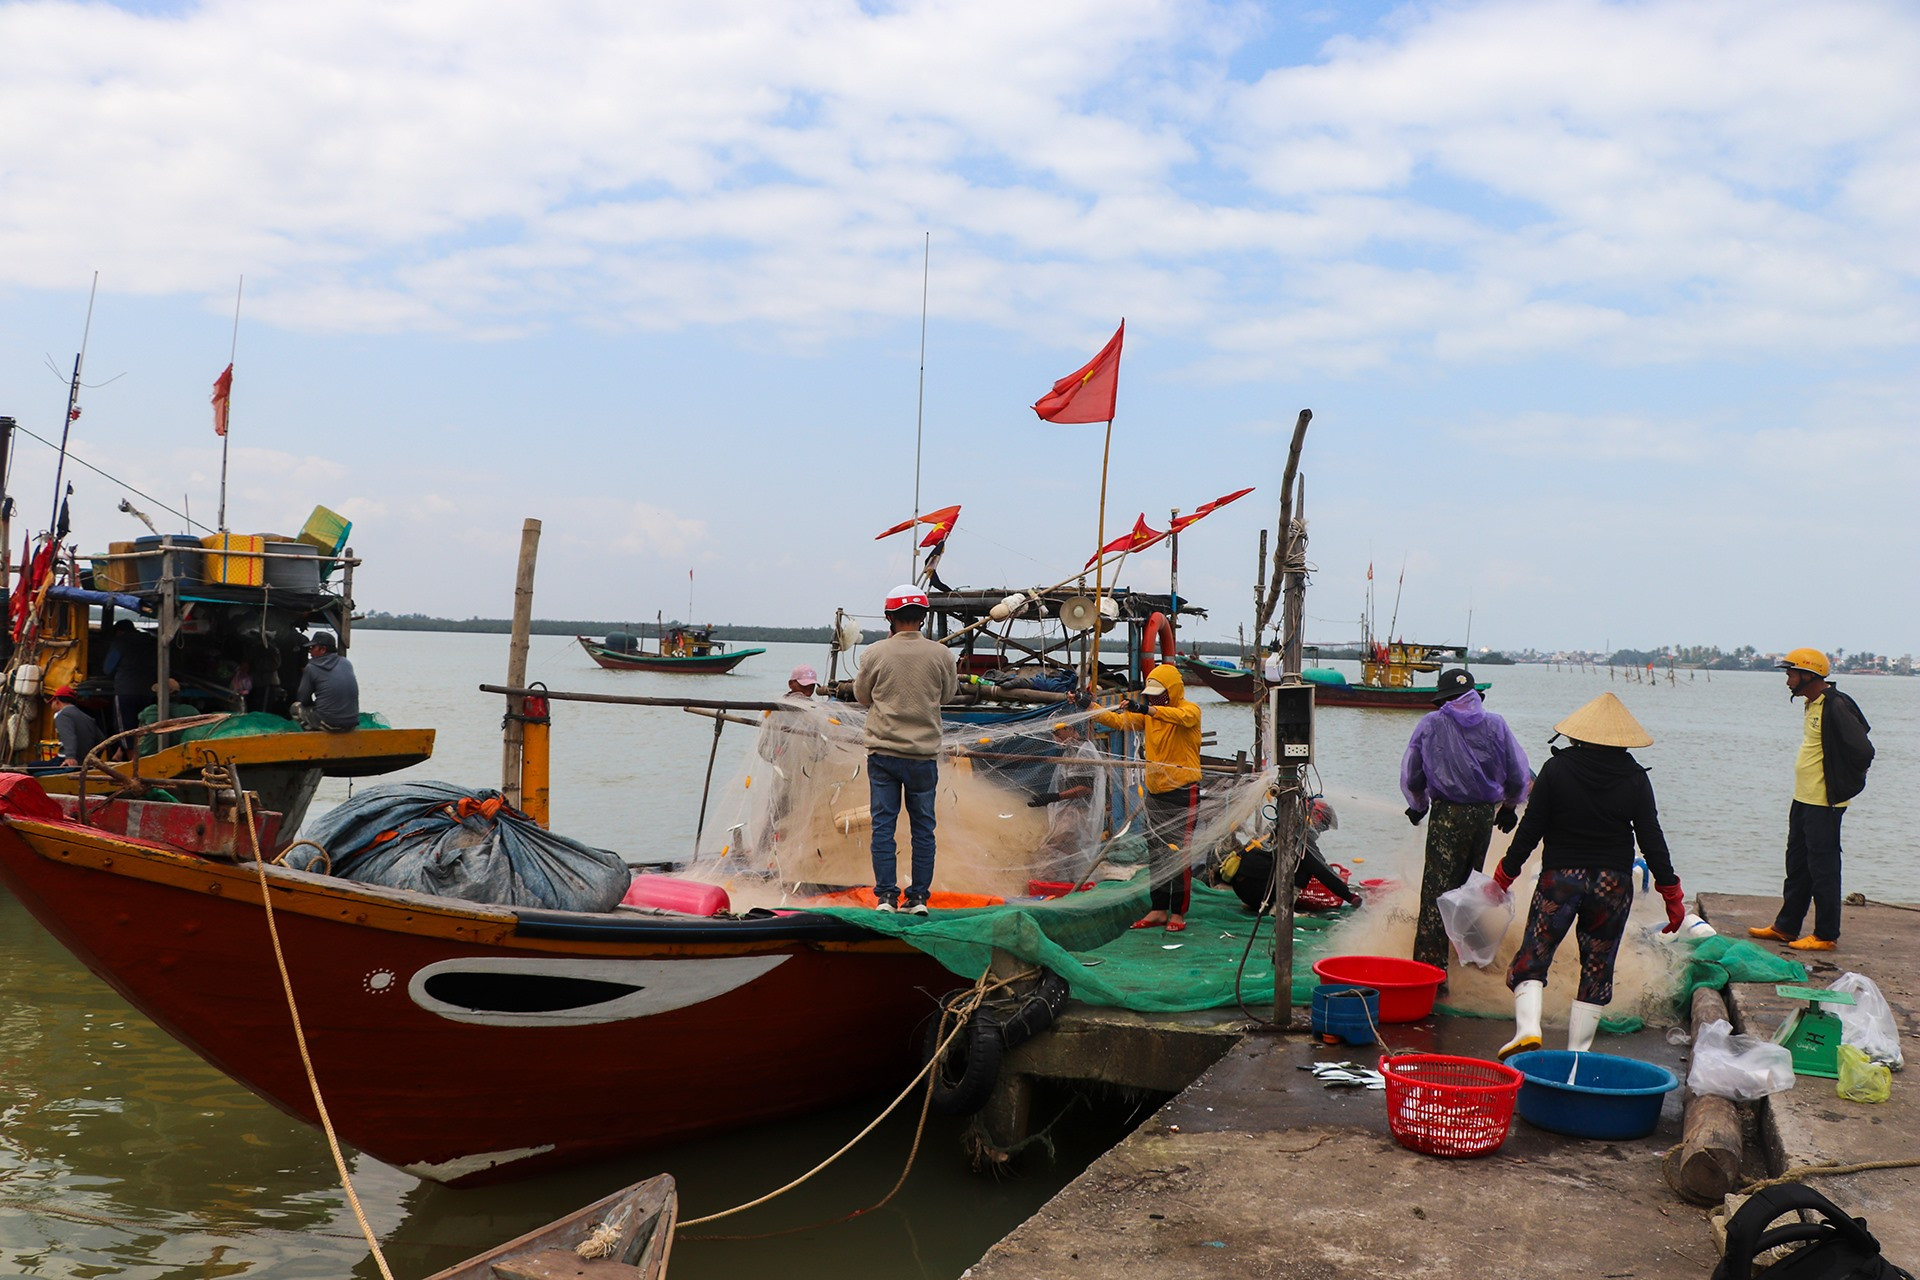 Sau những ngày gió mùa Đông Bắc gây biển động, vùng biển Quảng Nam bắt đầu có nắng. Tại xã Duy Hải, huyện Duy Xuyên, từ 3-4h sáng, ngư dân nơi đây đã bắt đầu chuyến biển.